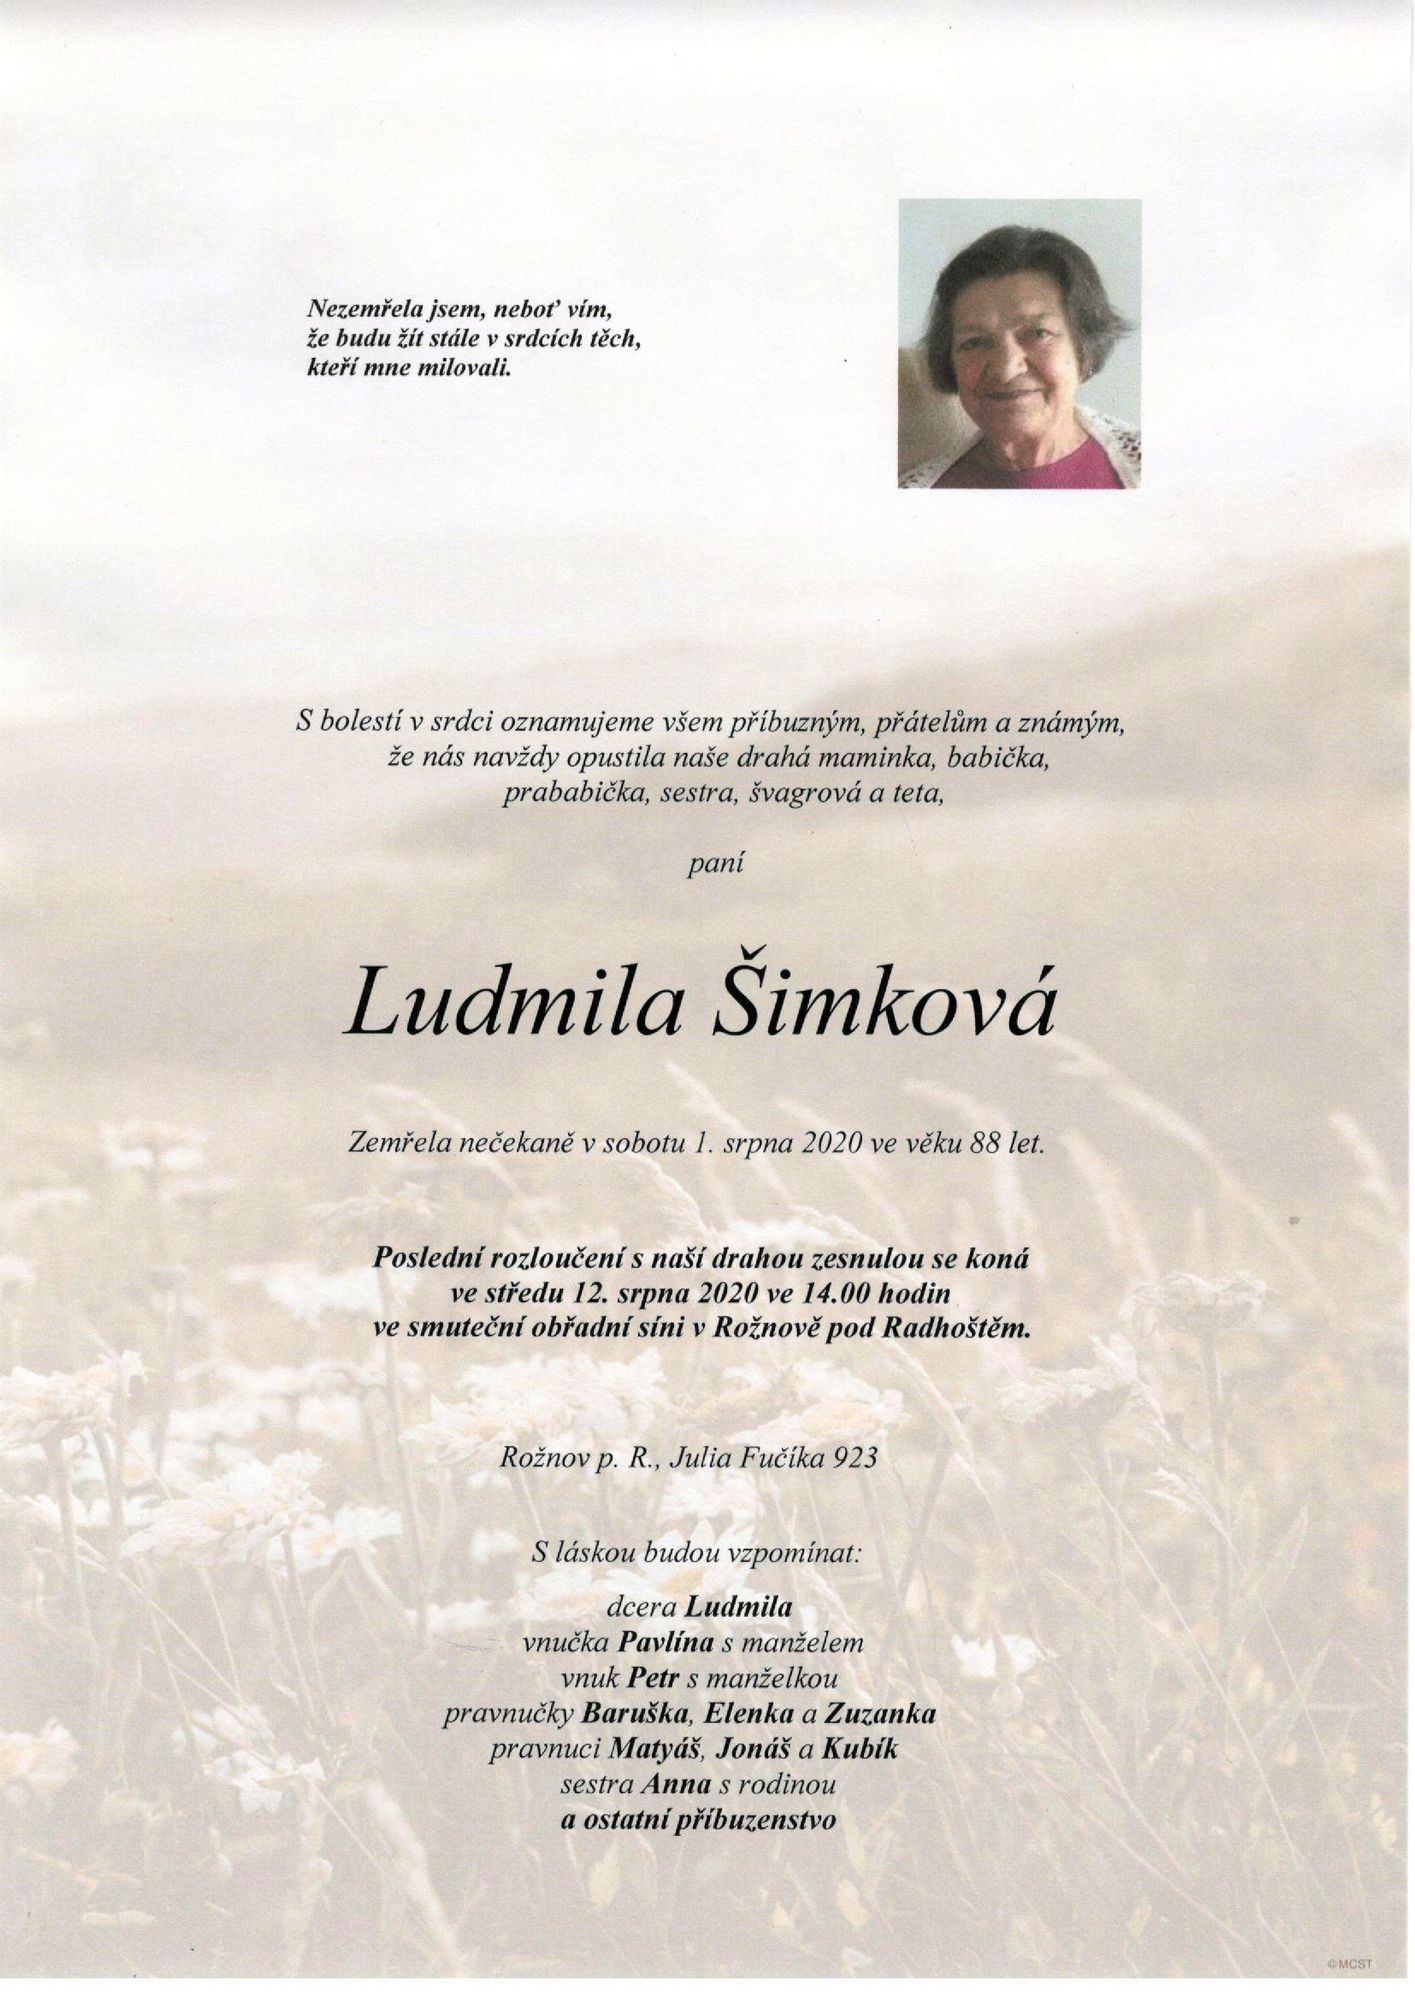 Ludmila Šimková